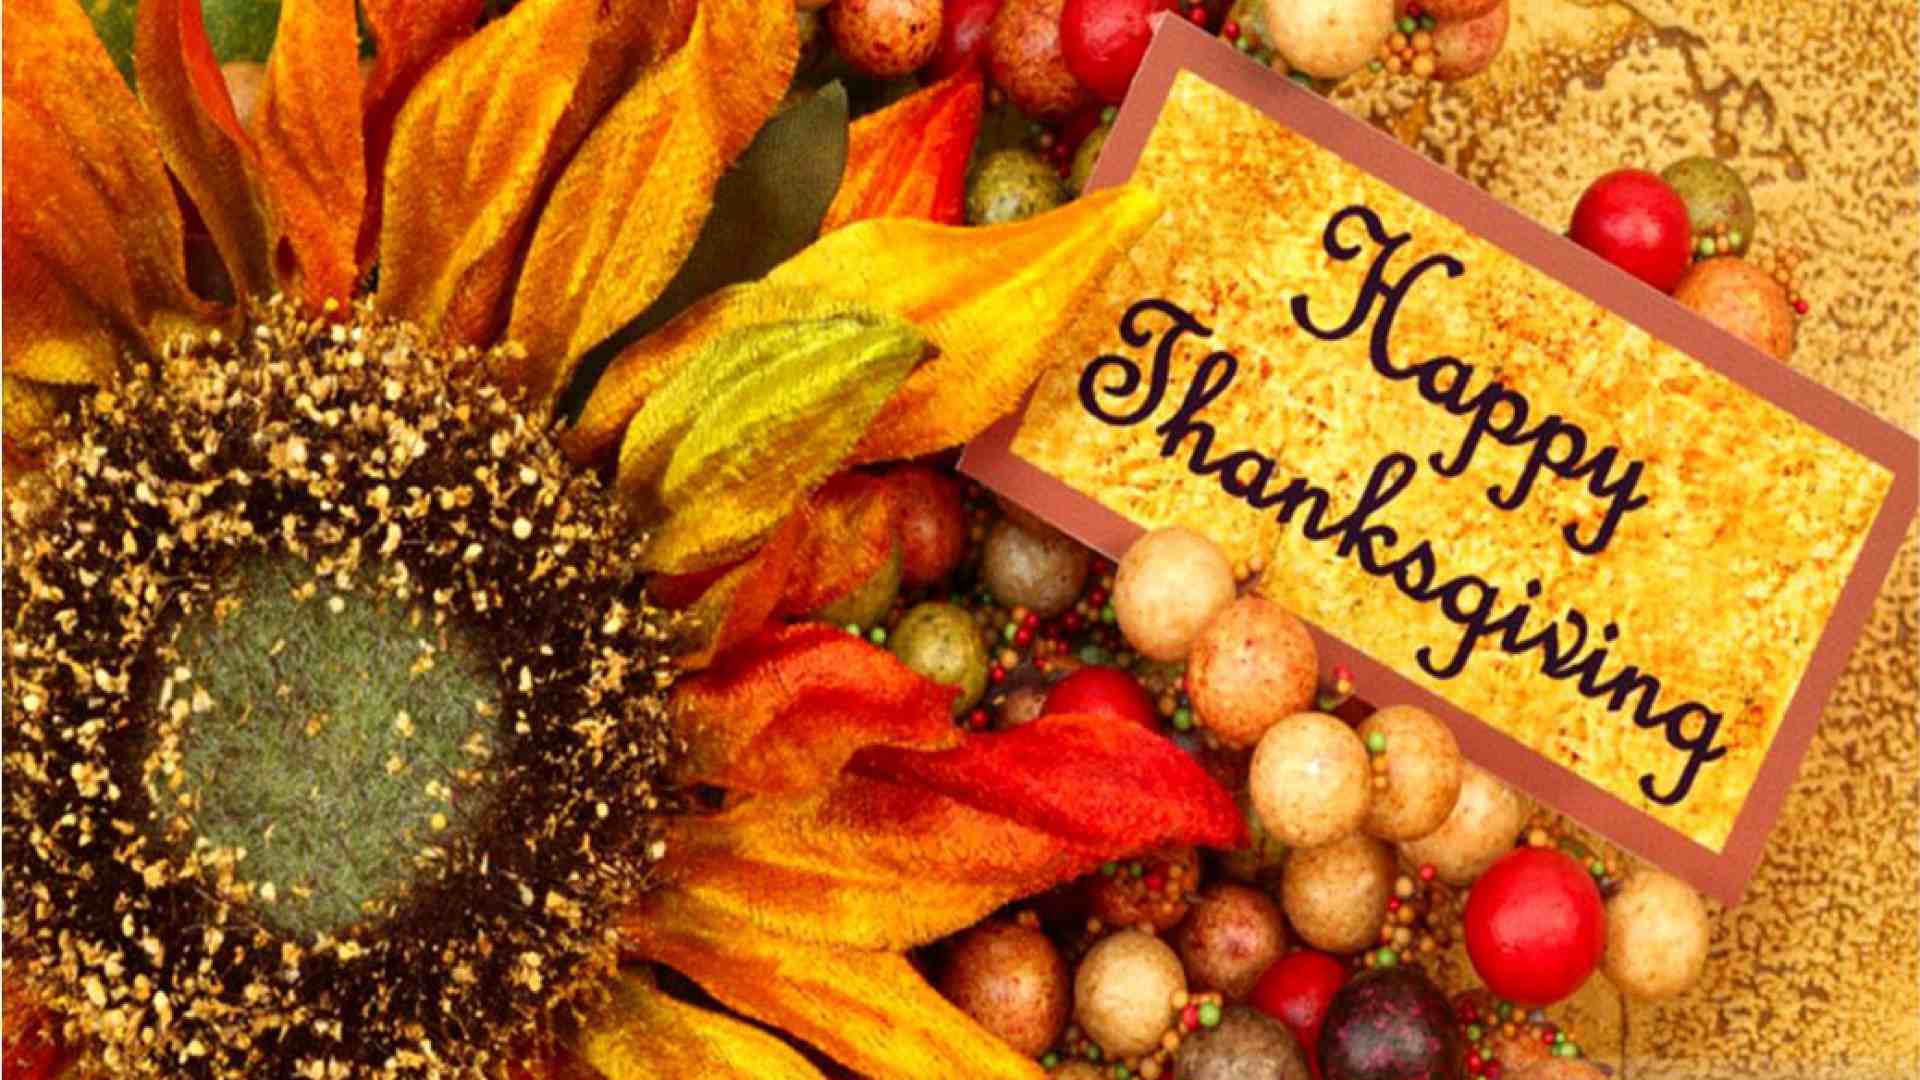 Thanksgiving Desktop Wallpaper Free Thanksgiving